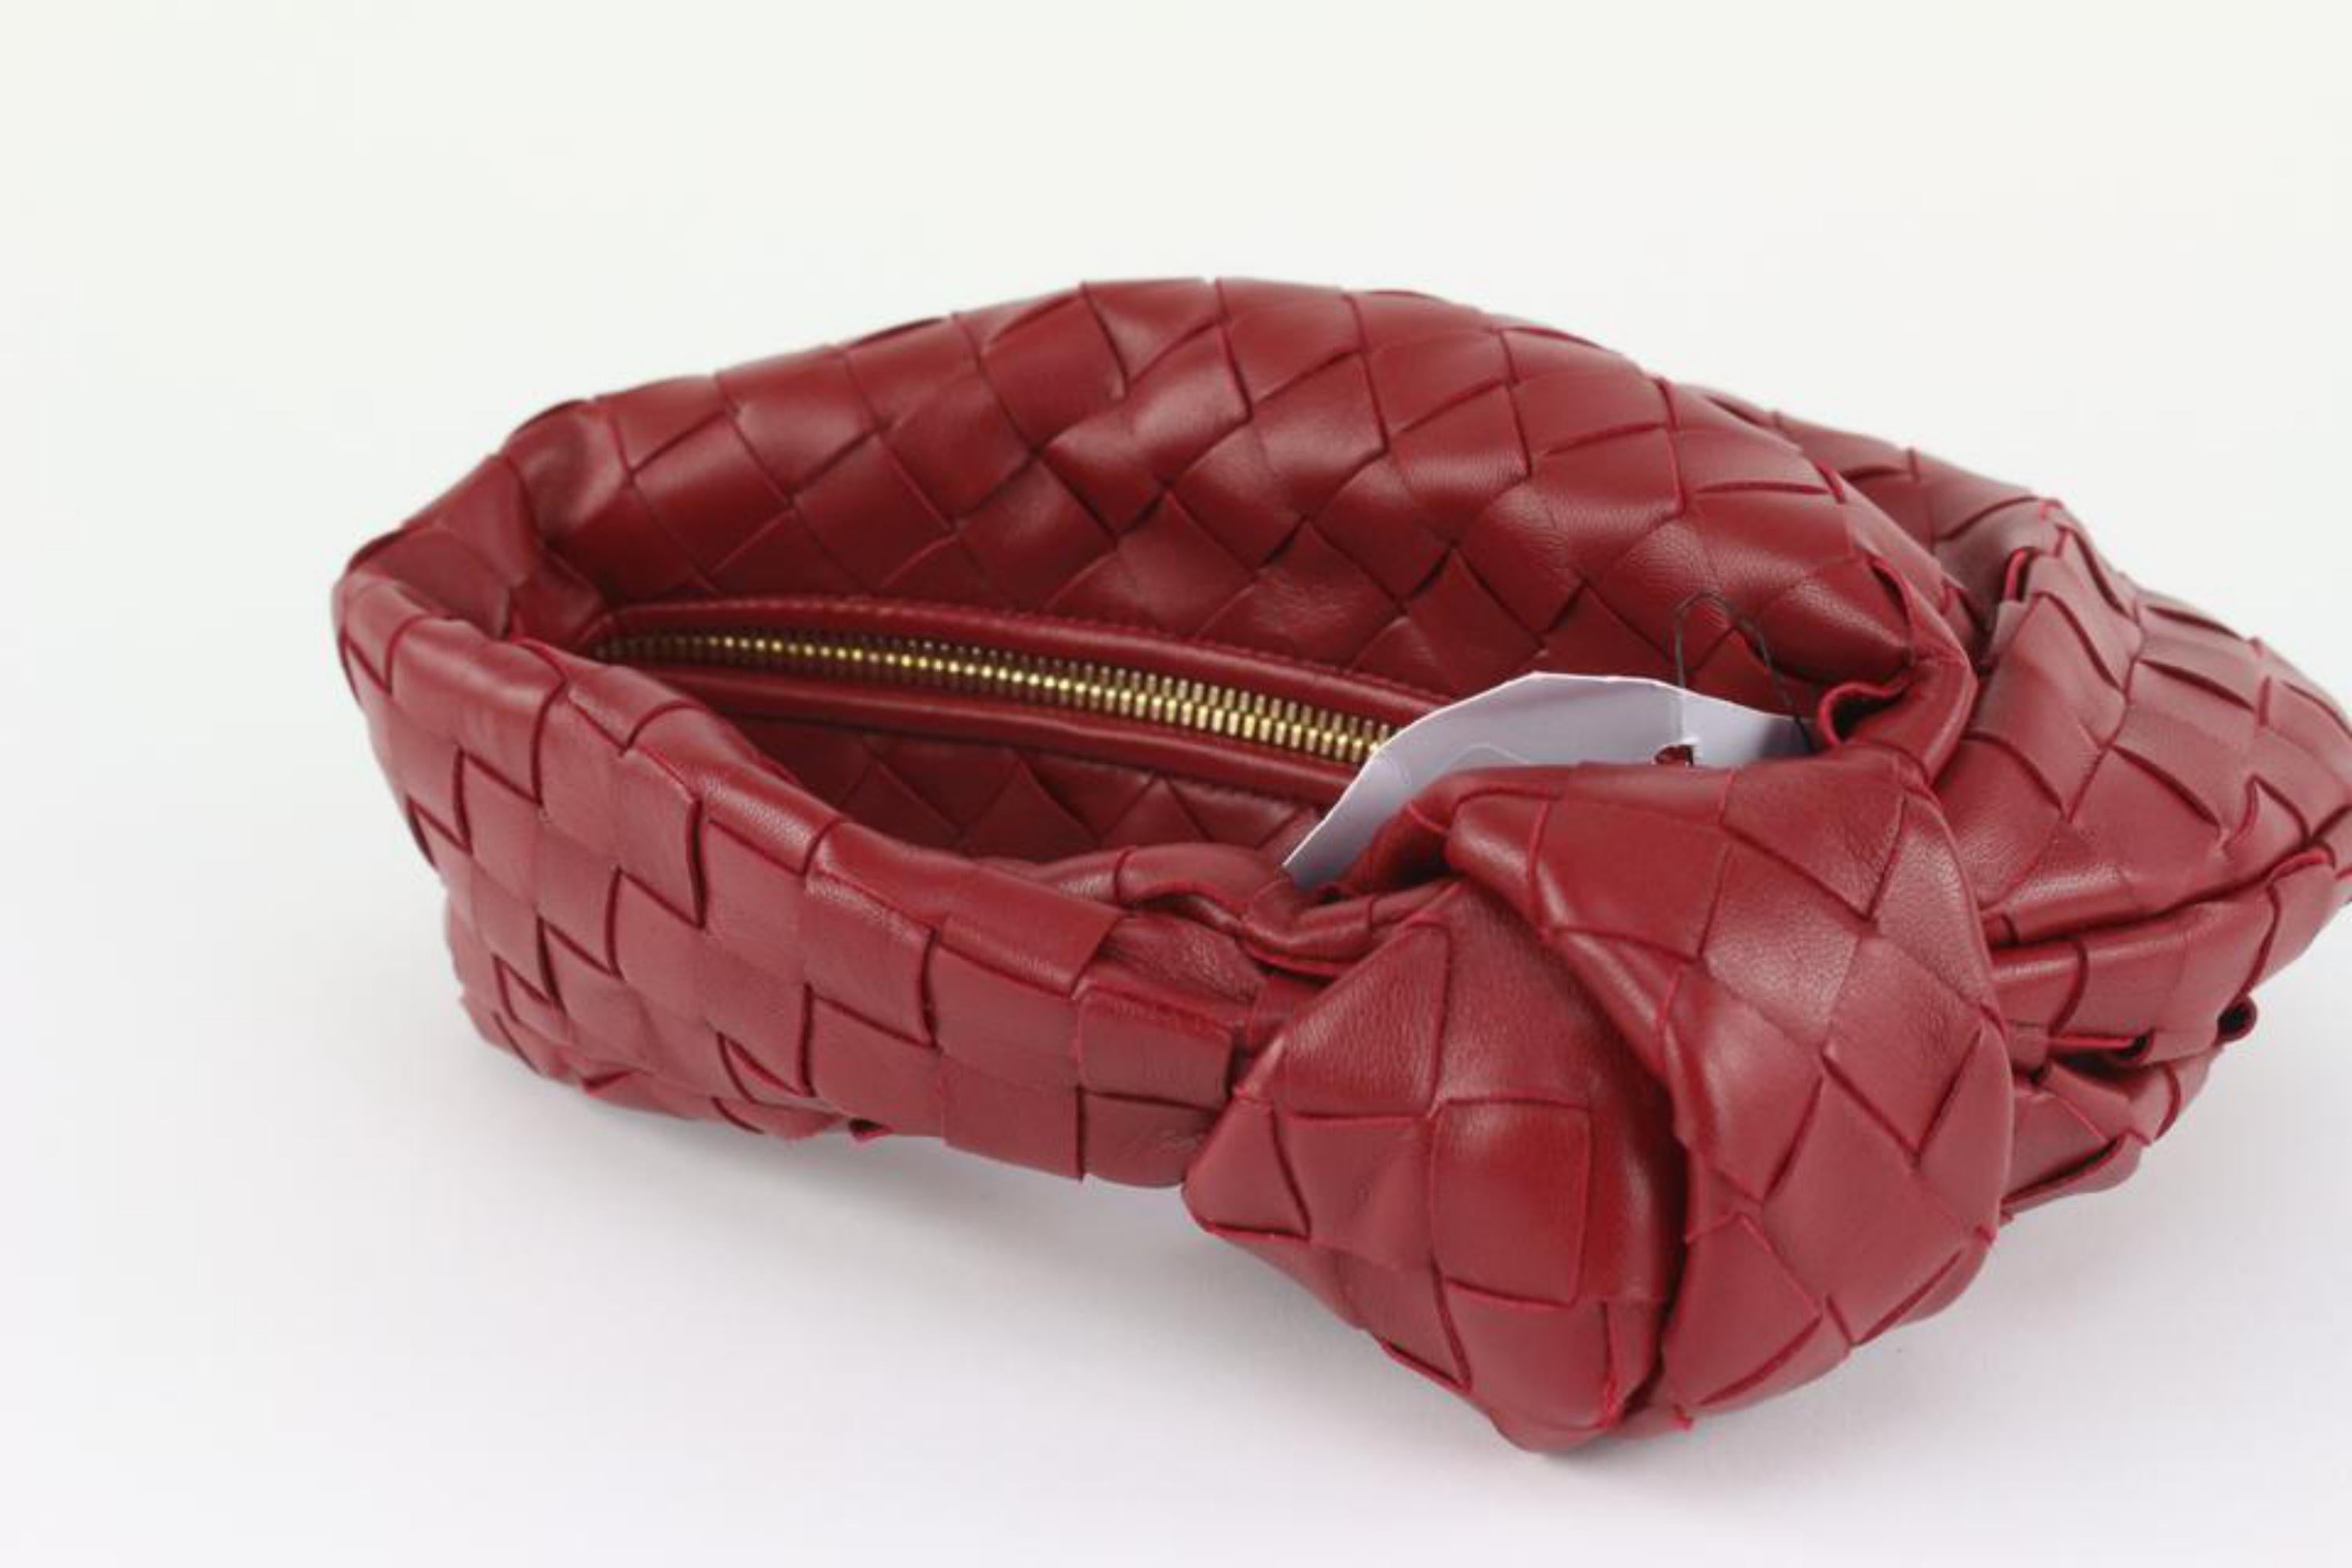 Bottega Veneta Red Intrecciato Leather The Mini Jodie Hobo Bag 1123bv36 1